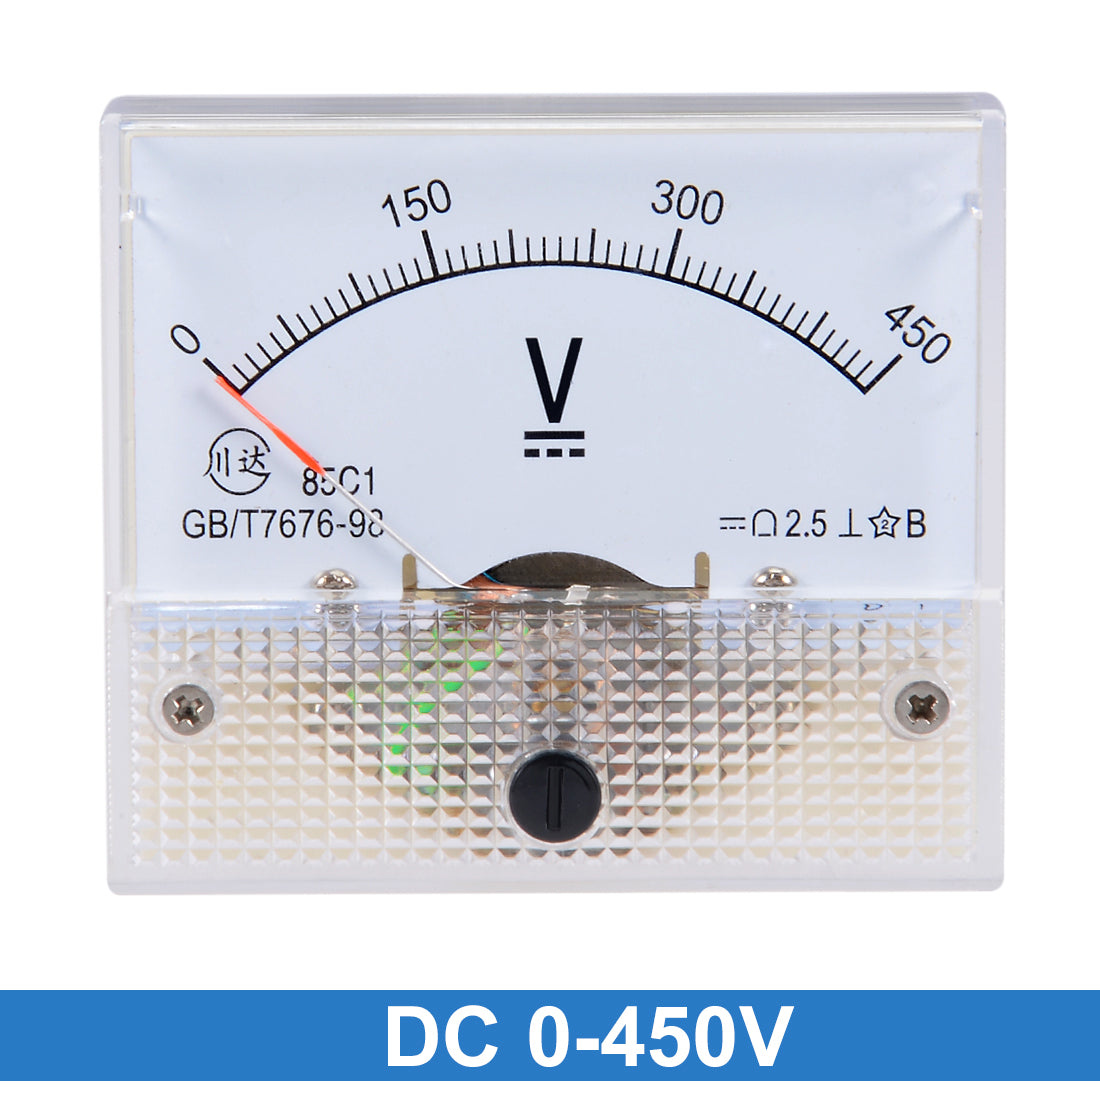 uxcell Uxcell DC 0-450V Analog Panel Voltage Gauge Volt Meter 85C1 2.5% Error Margin